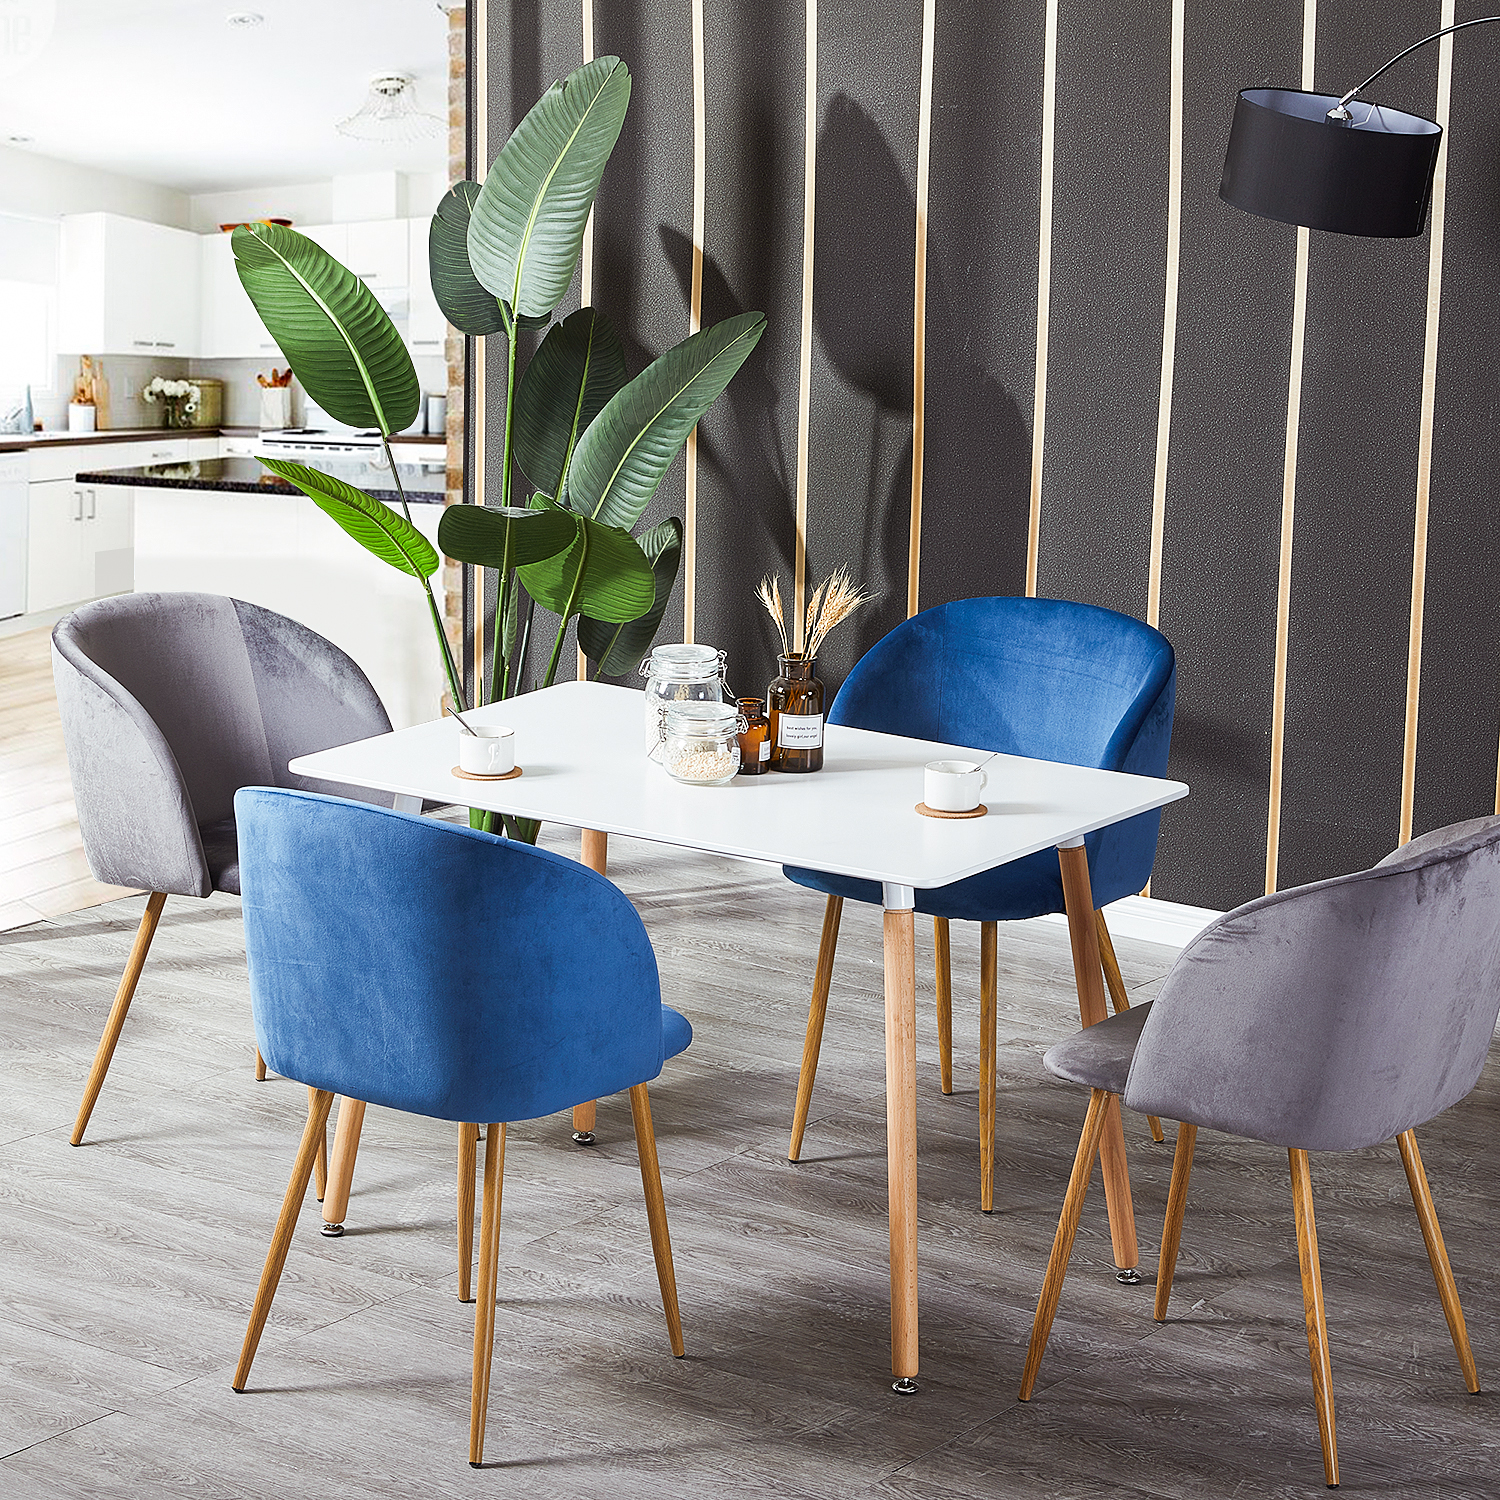 Dora Household Table à Manger Rectangulaire en Bois Salle à Manger Scandinave Simple Table en bois à quatre pieds 110*70*73cm -Blanc